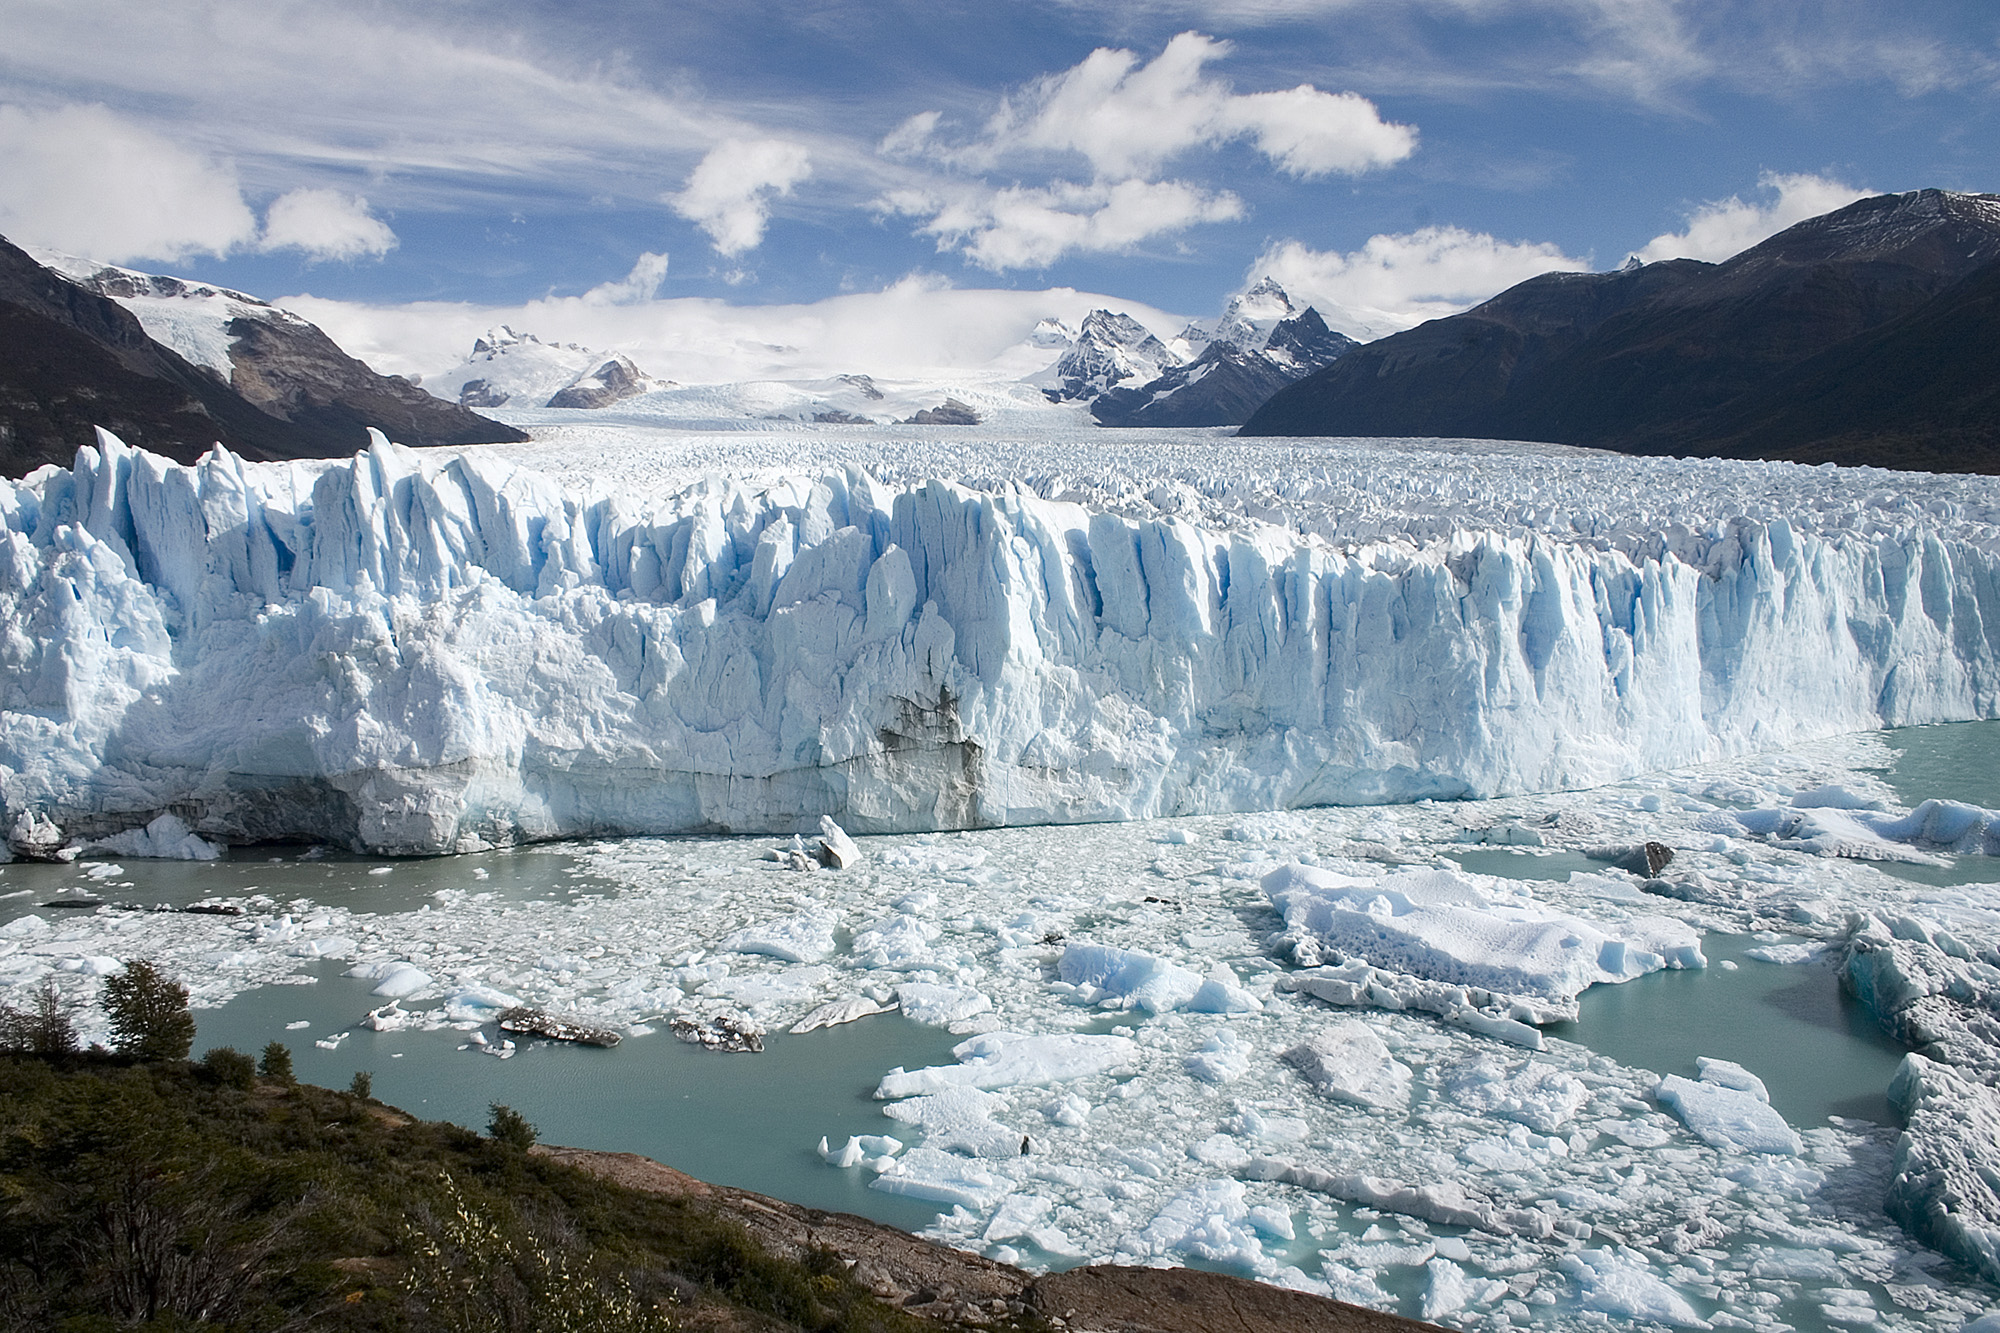 Recuo dos glaciares é ‘irreversível e imparável’, dizem cientistas